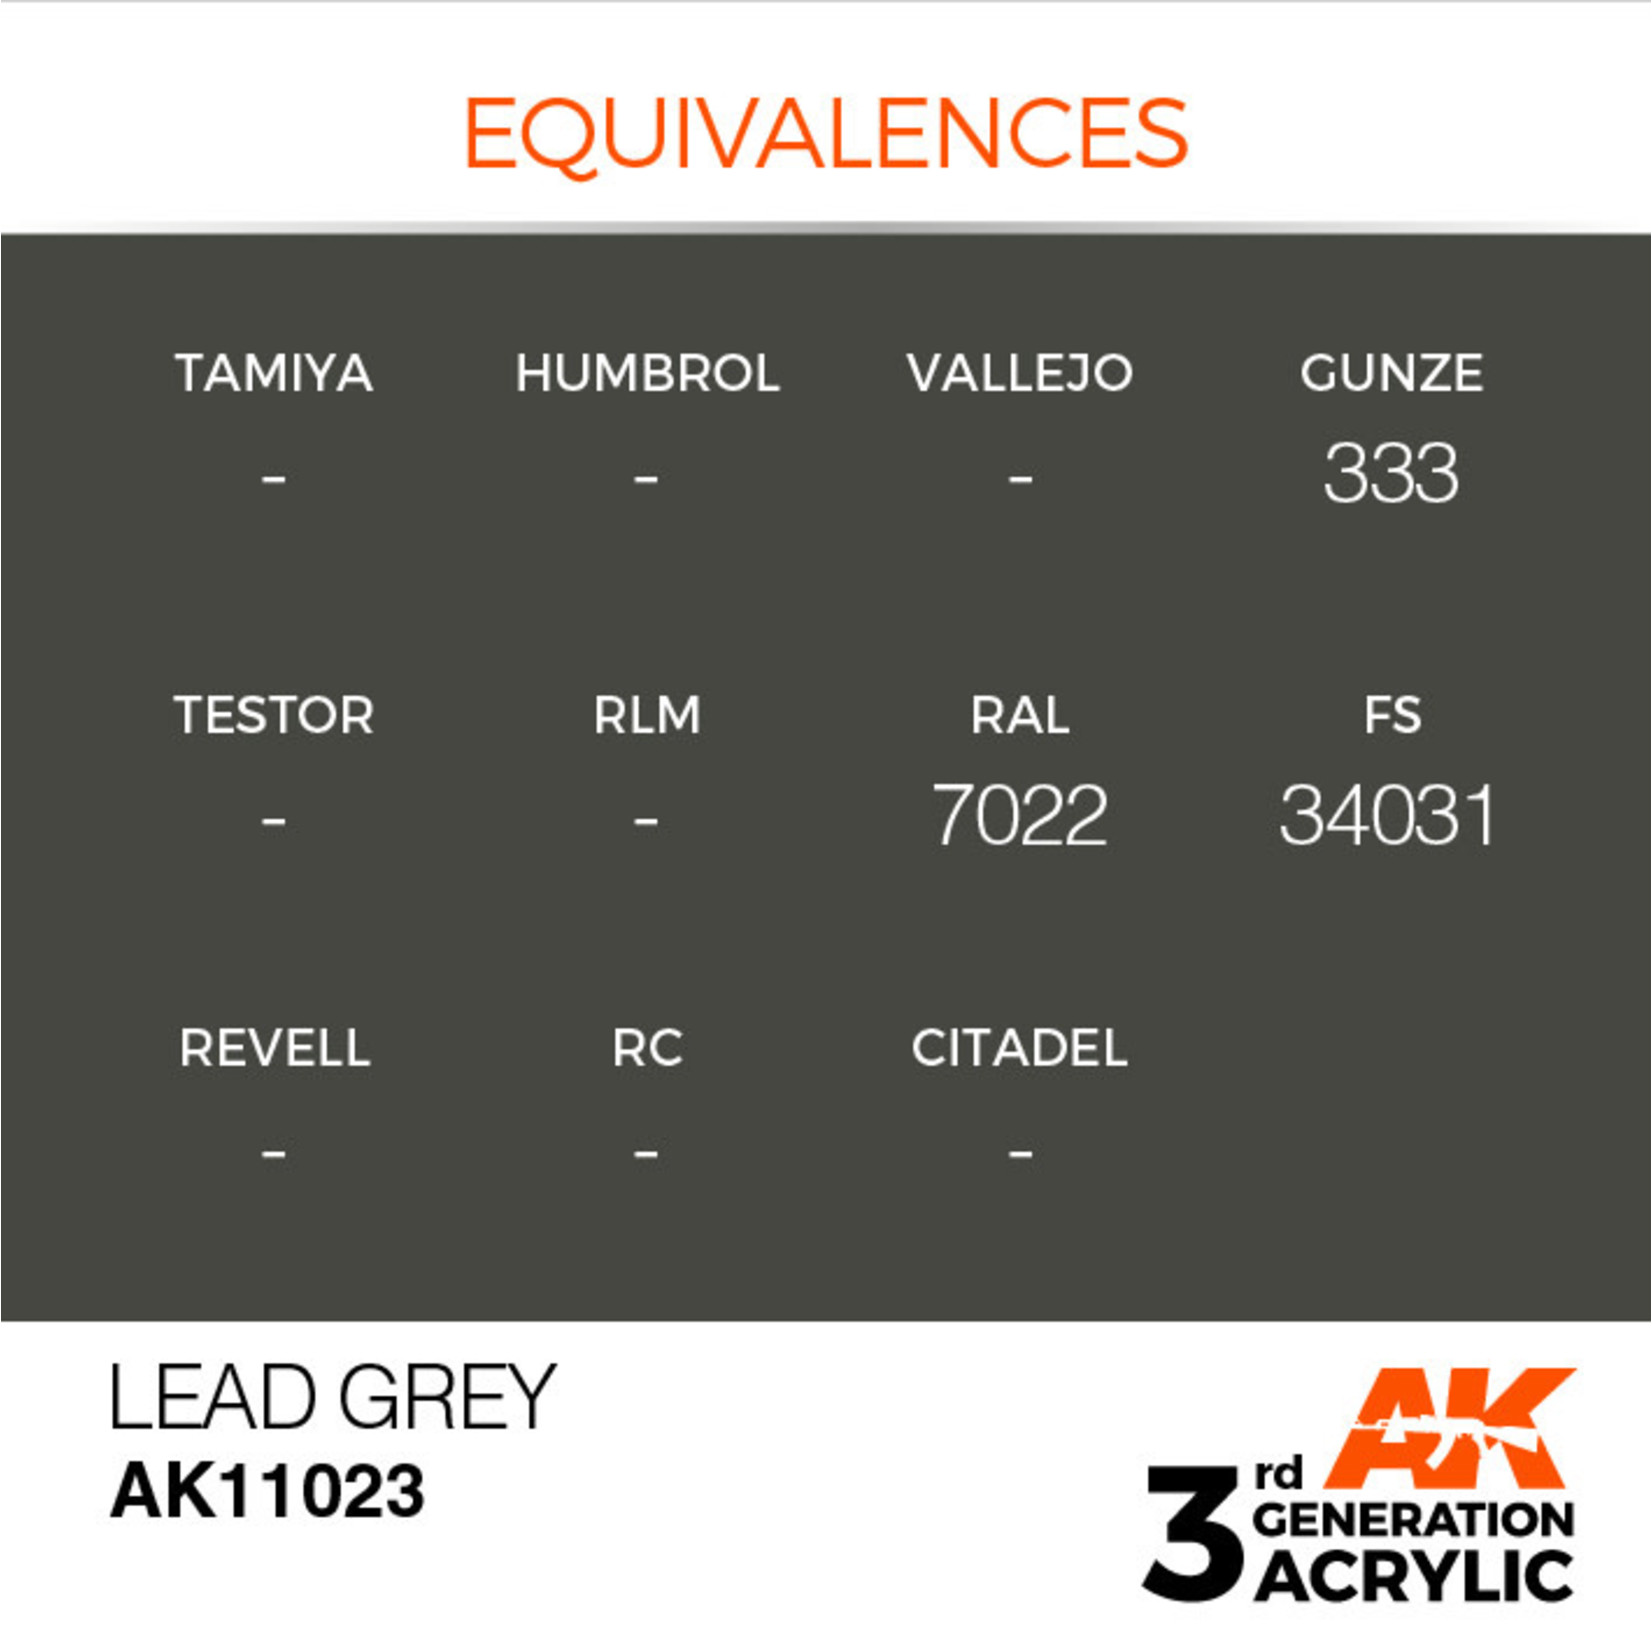 AK Interactive AK11023 3G Acrylic Lead Grey 17ml